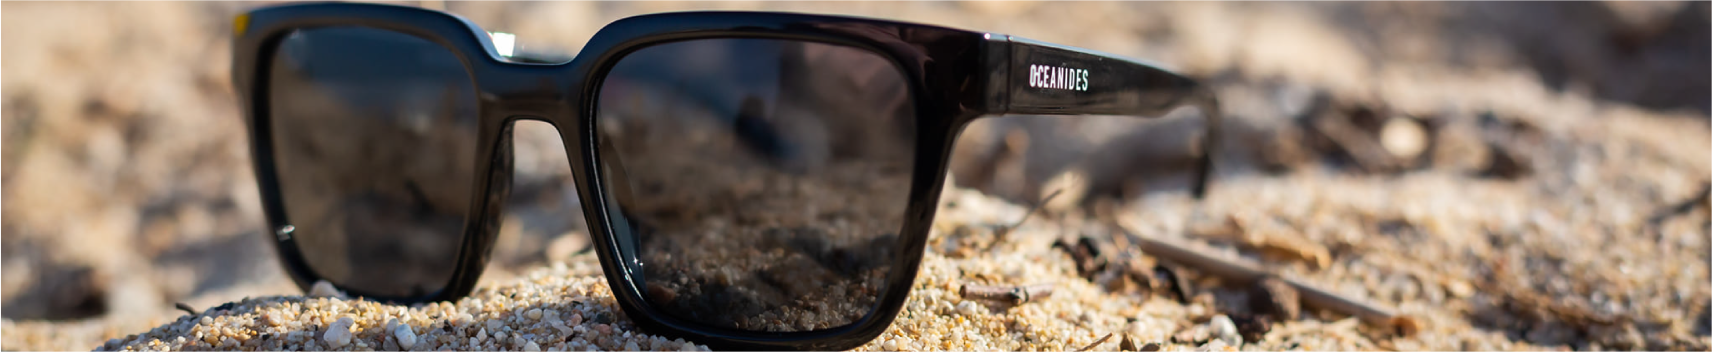 Óculos de Sol Reciclados | Urboow Fashionable Eyewear